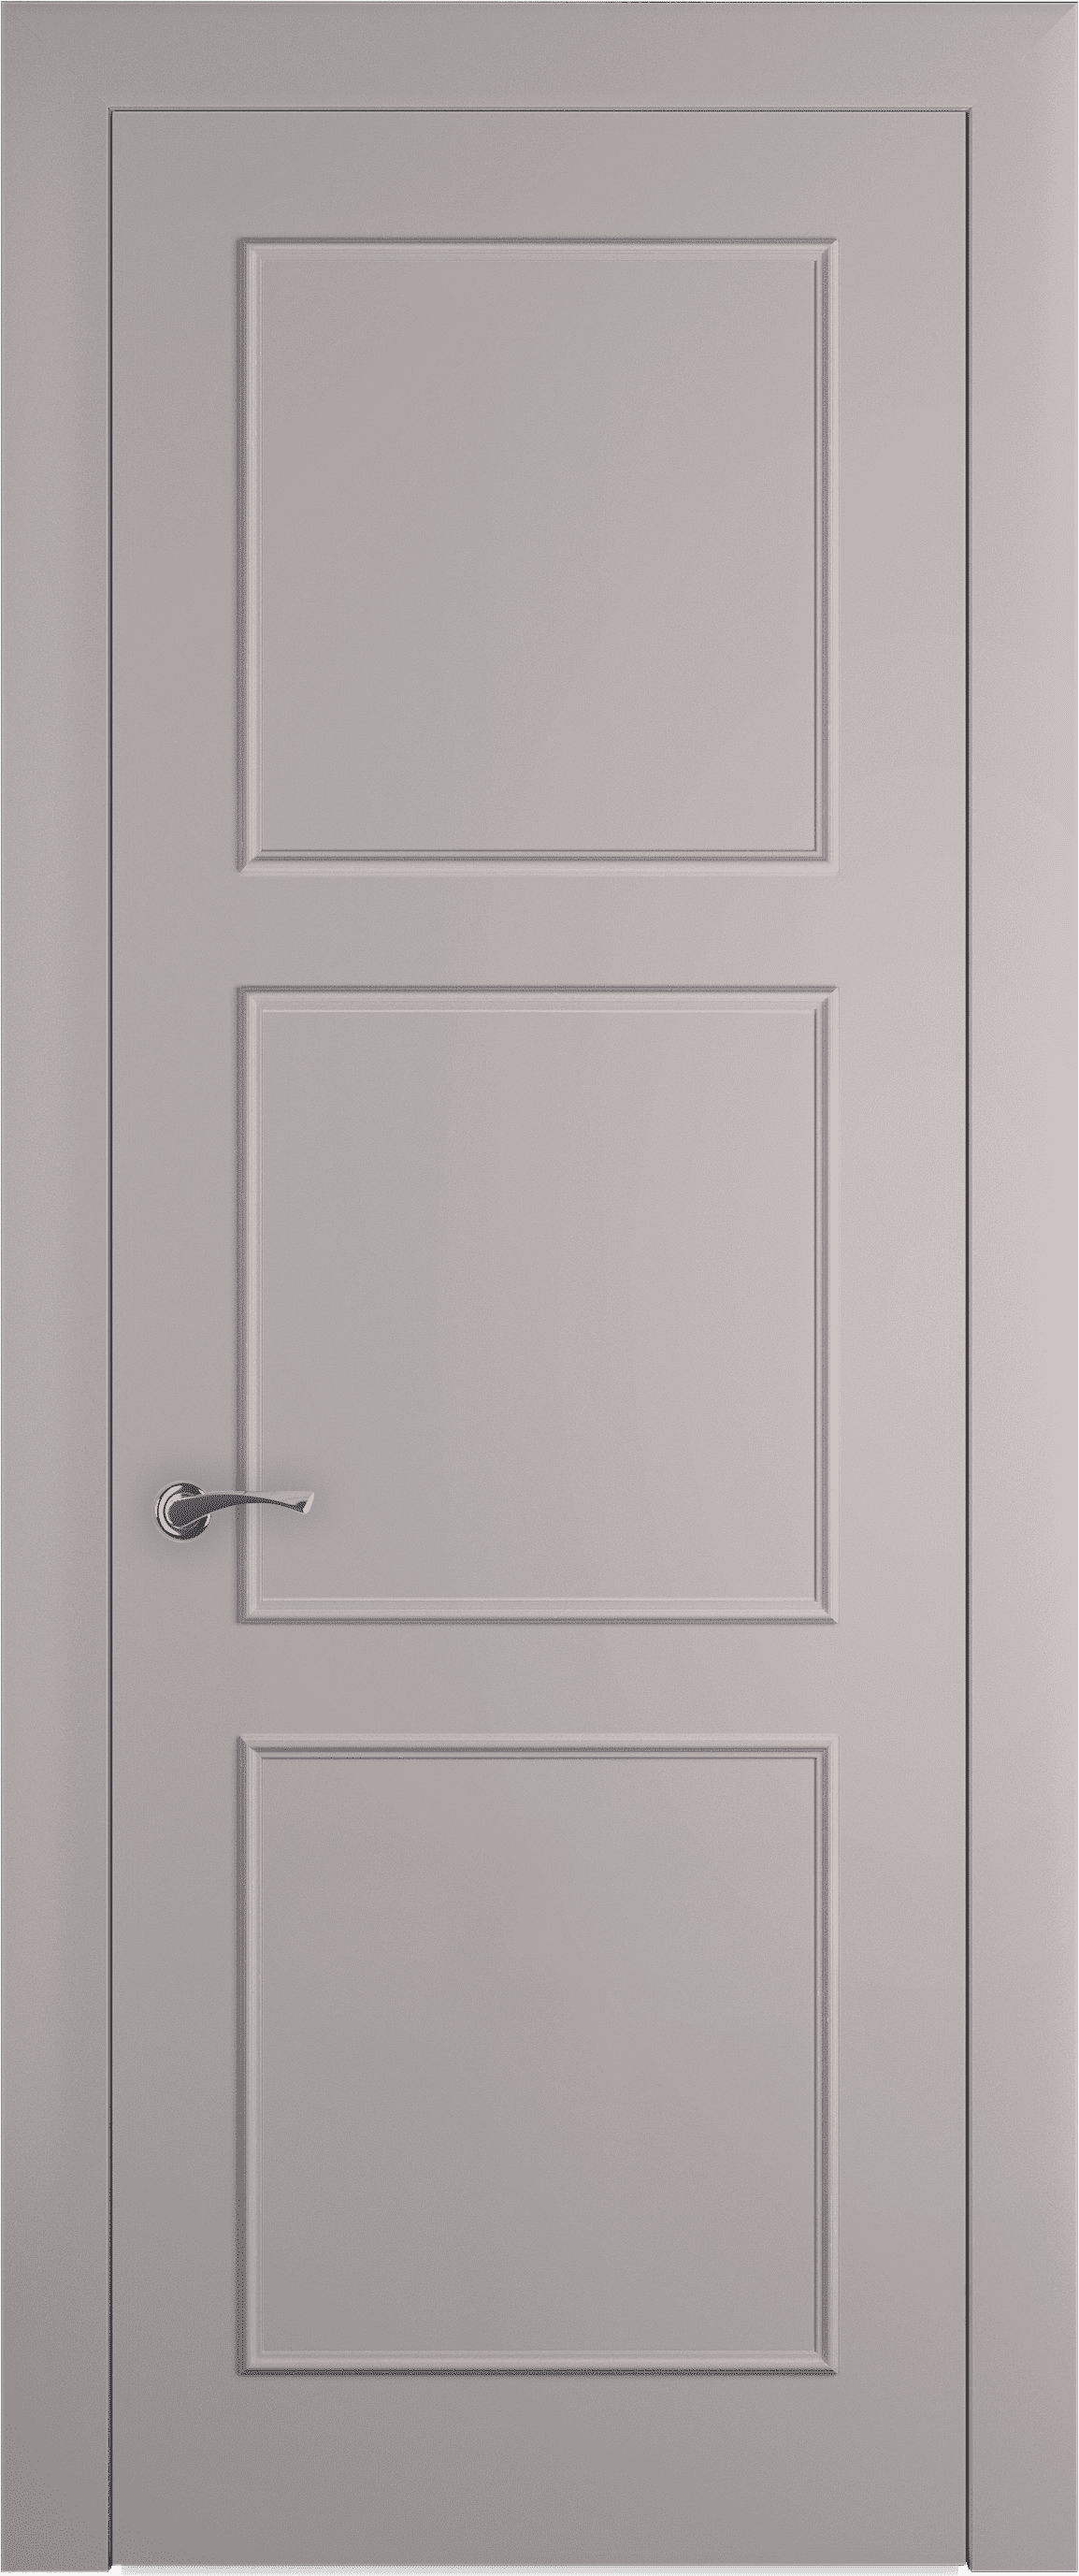 Межкомнатная дверь Трио багет 8